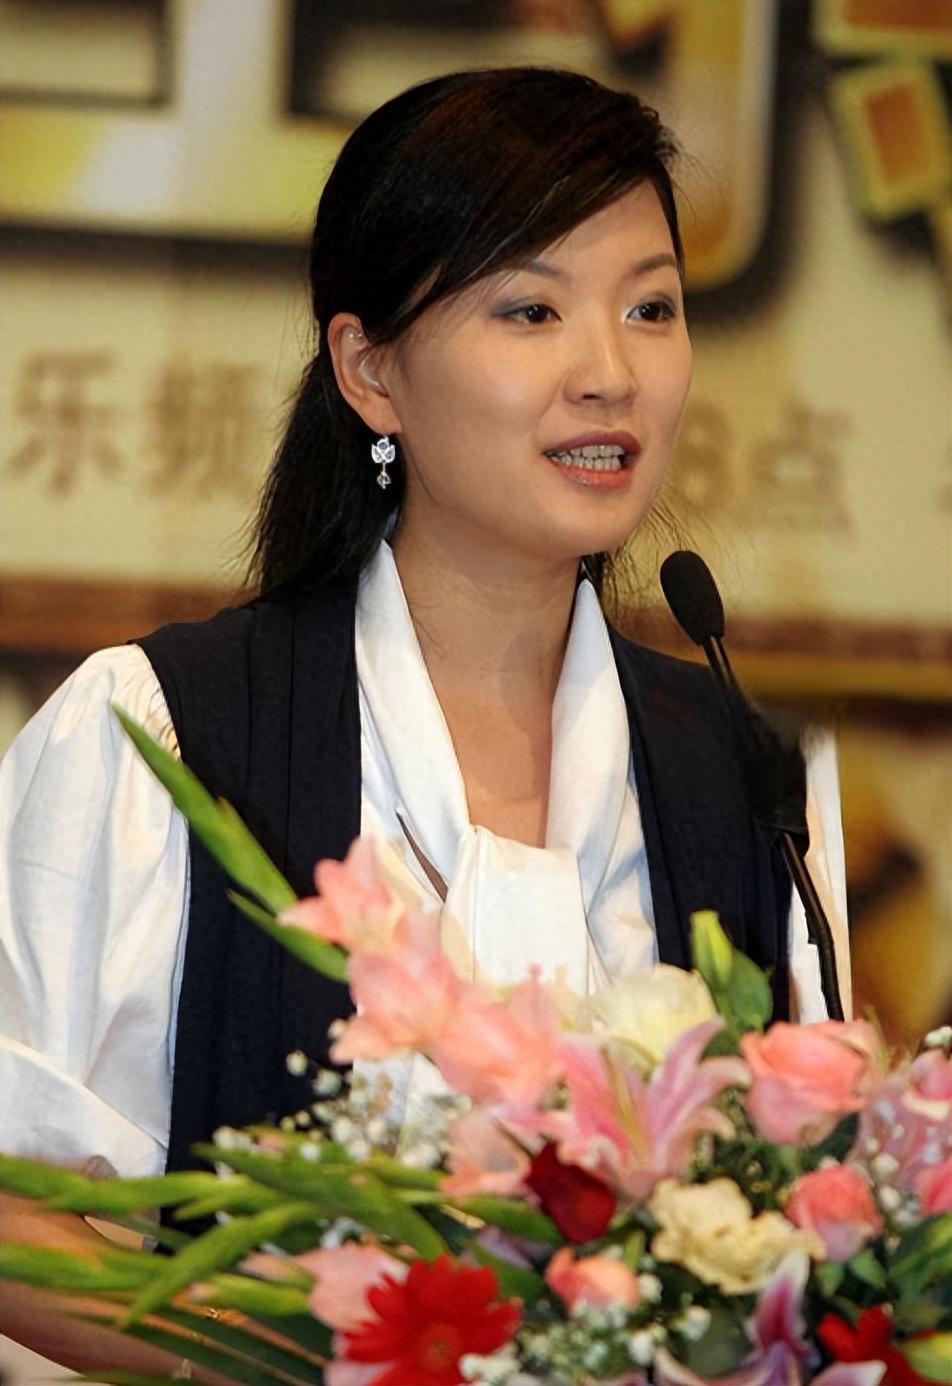 跌下神坛的原因 陈蓉曾是东方卫视的一姐,担任过多个节目的主持人